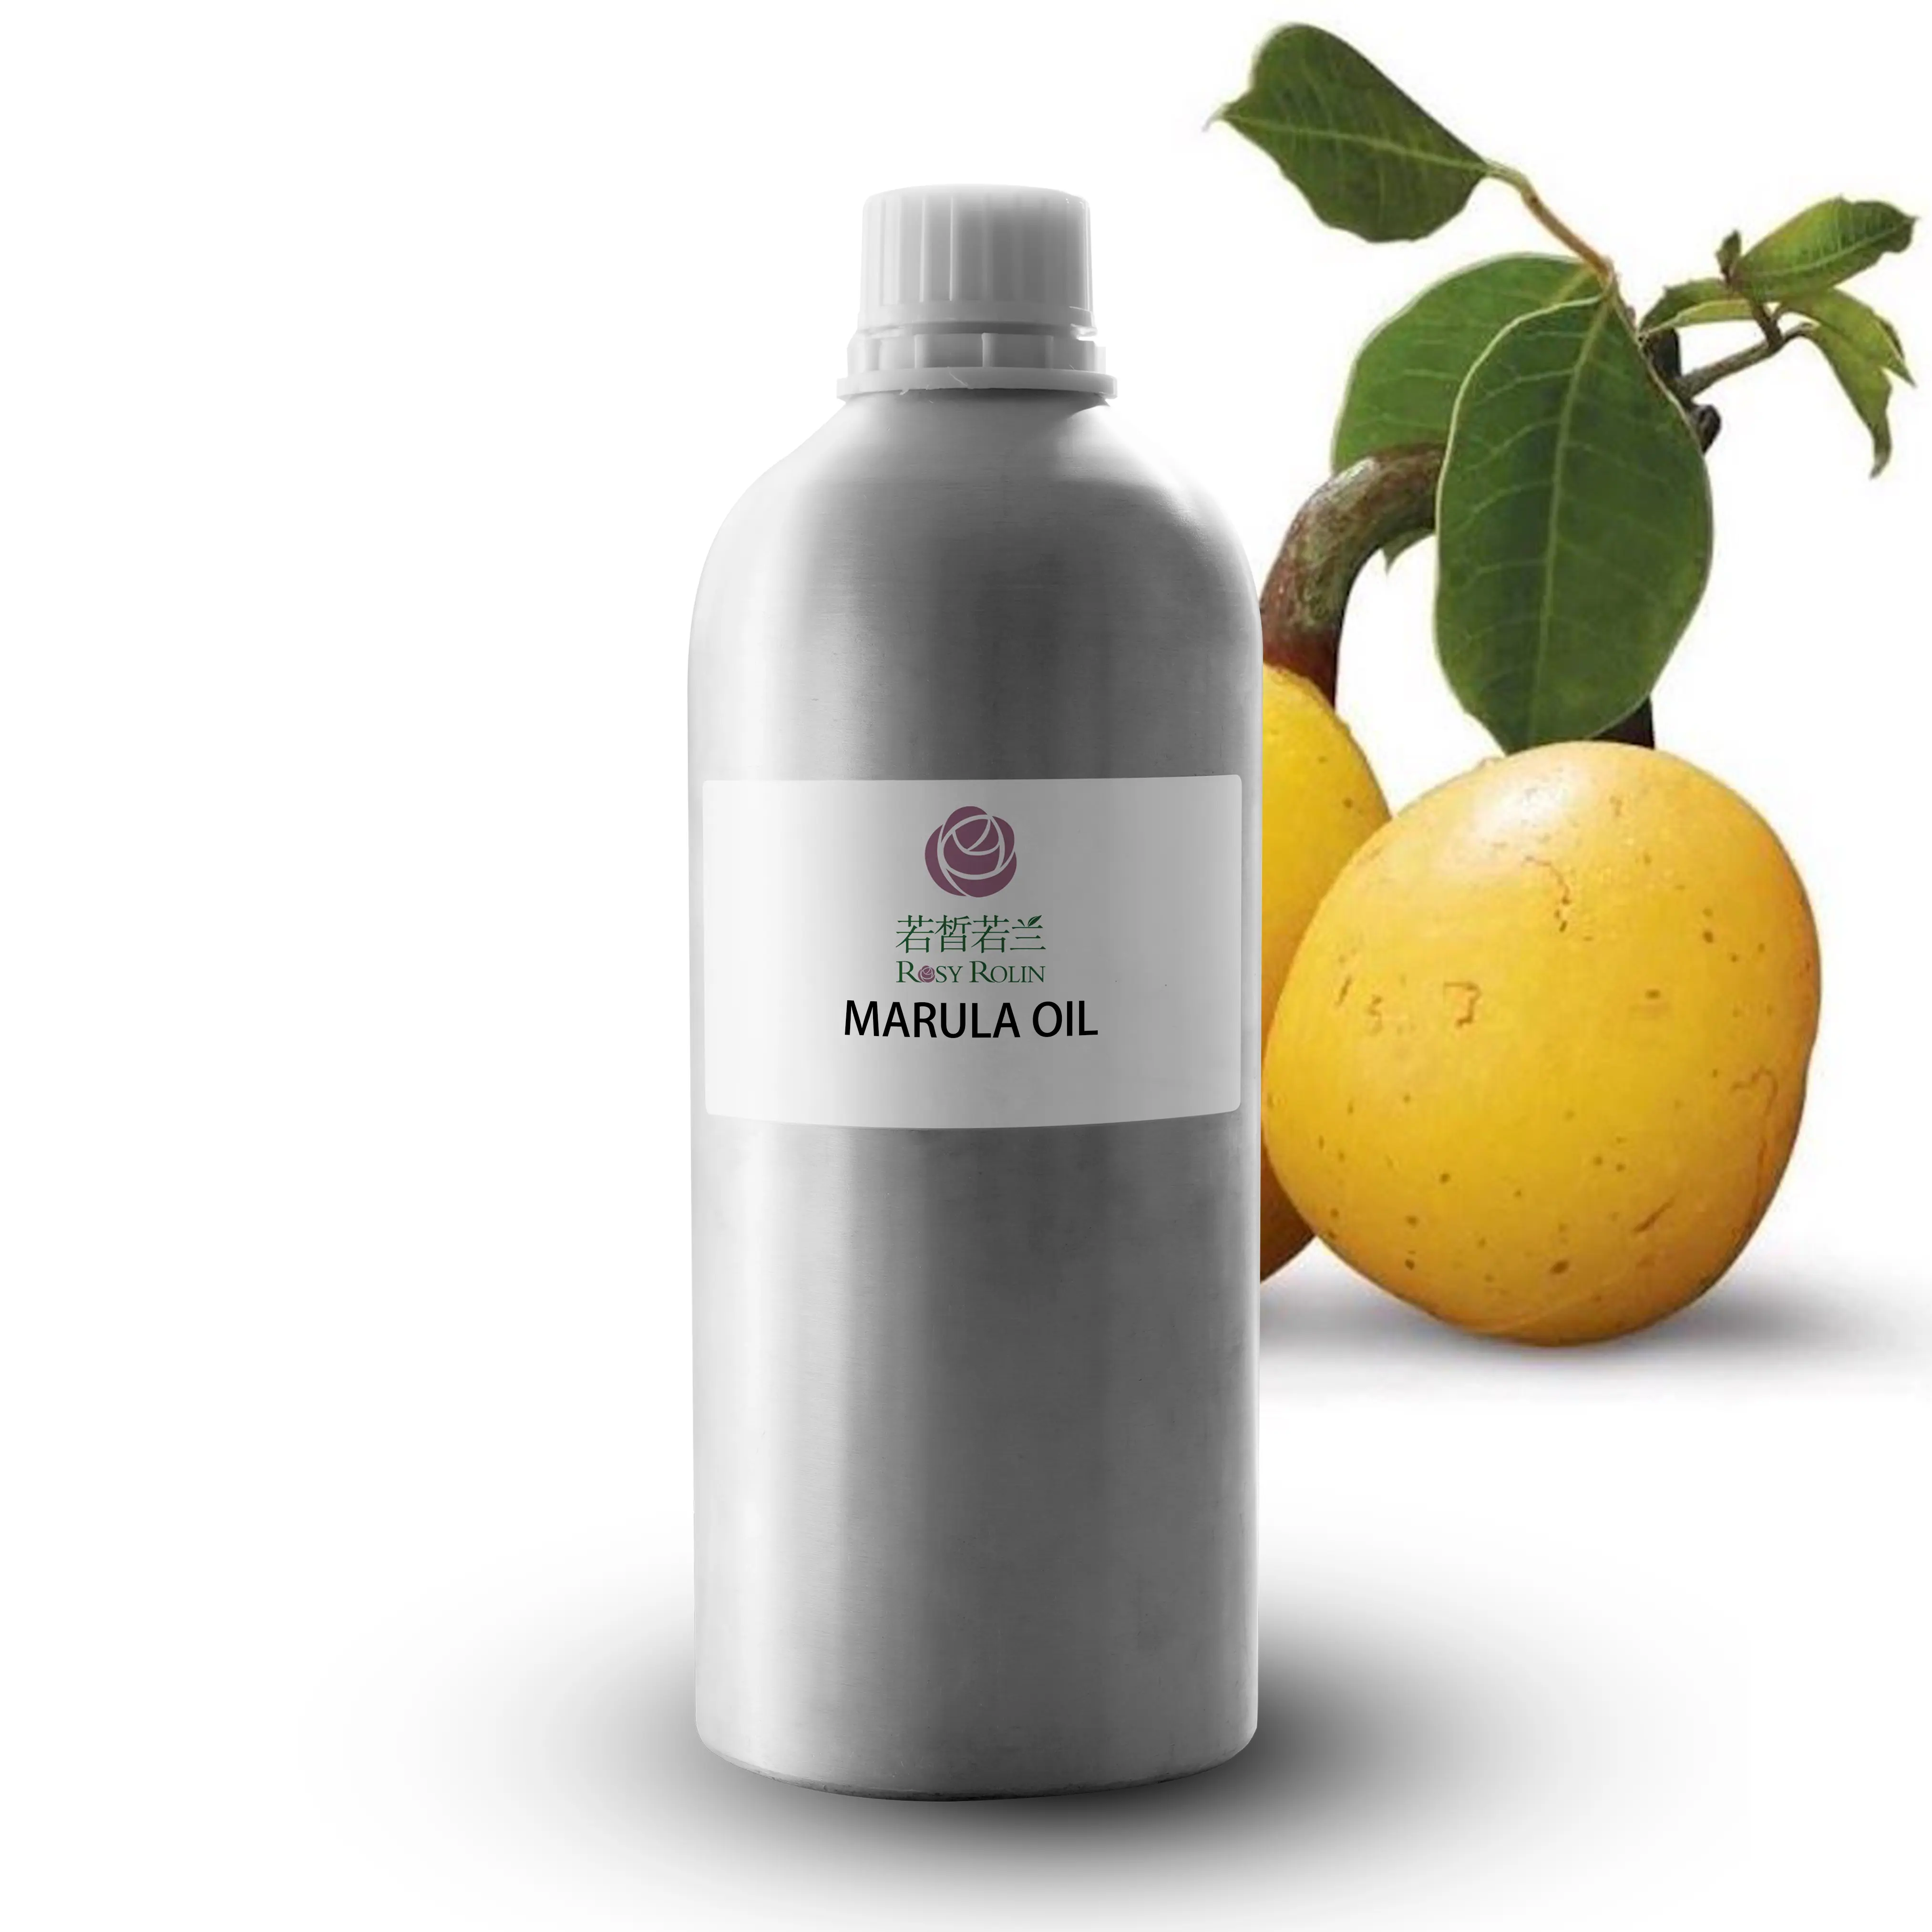 Puro naturale organico spremuto a freddo essenziale olio di Marula per idratante viso pelle capelli e unghie